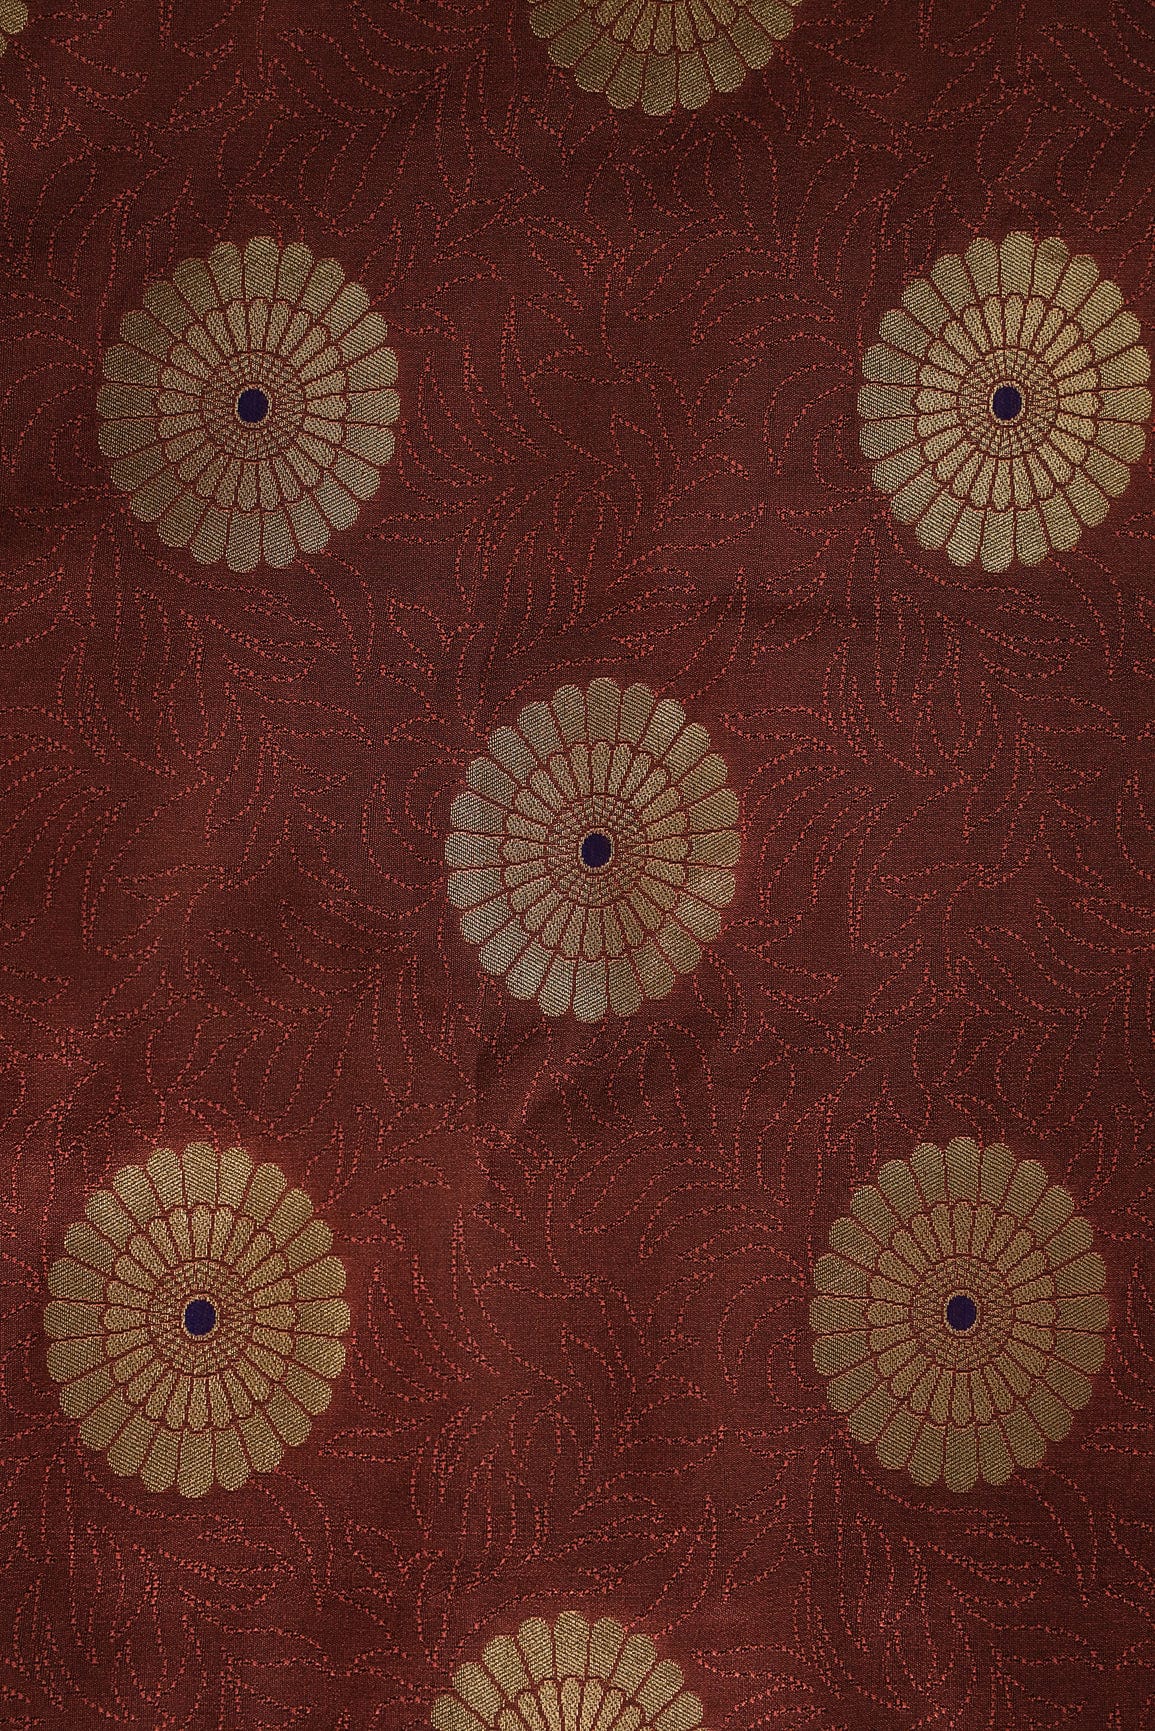 doeraa Banarasi Fabrics Brown and Gold Motif Banarasi Brocade Fabric